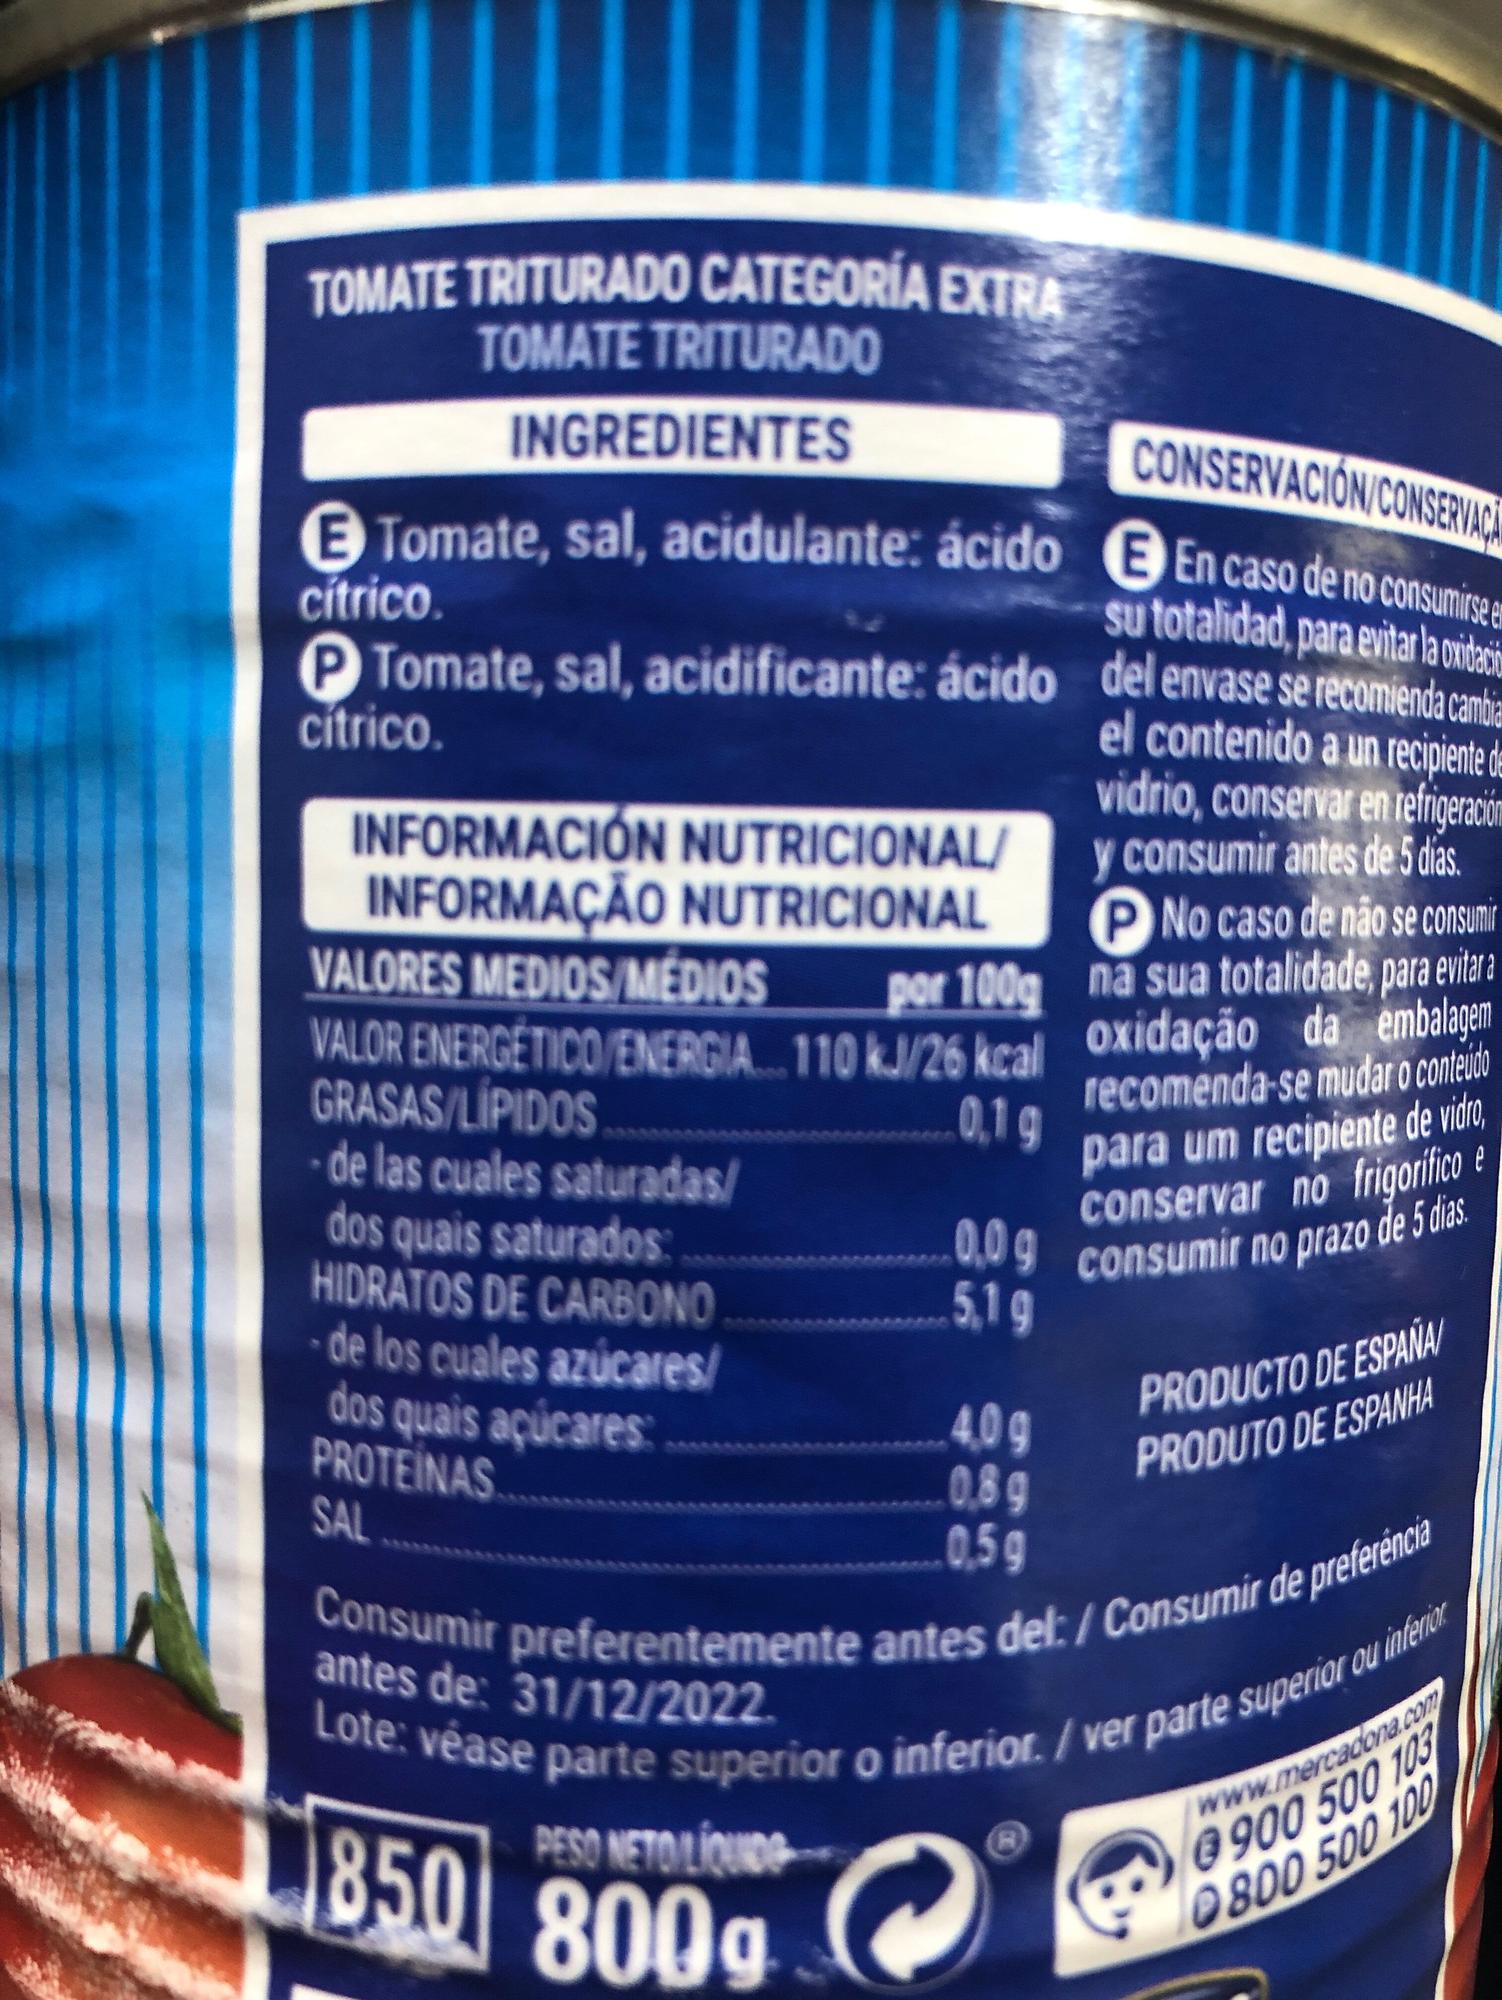 Información nutricional del tomate triturado Hacendado de Mercadona.